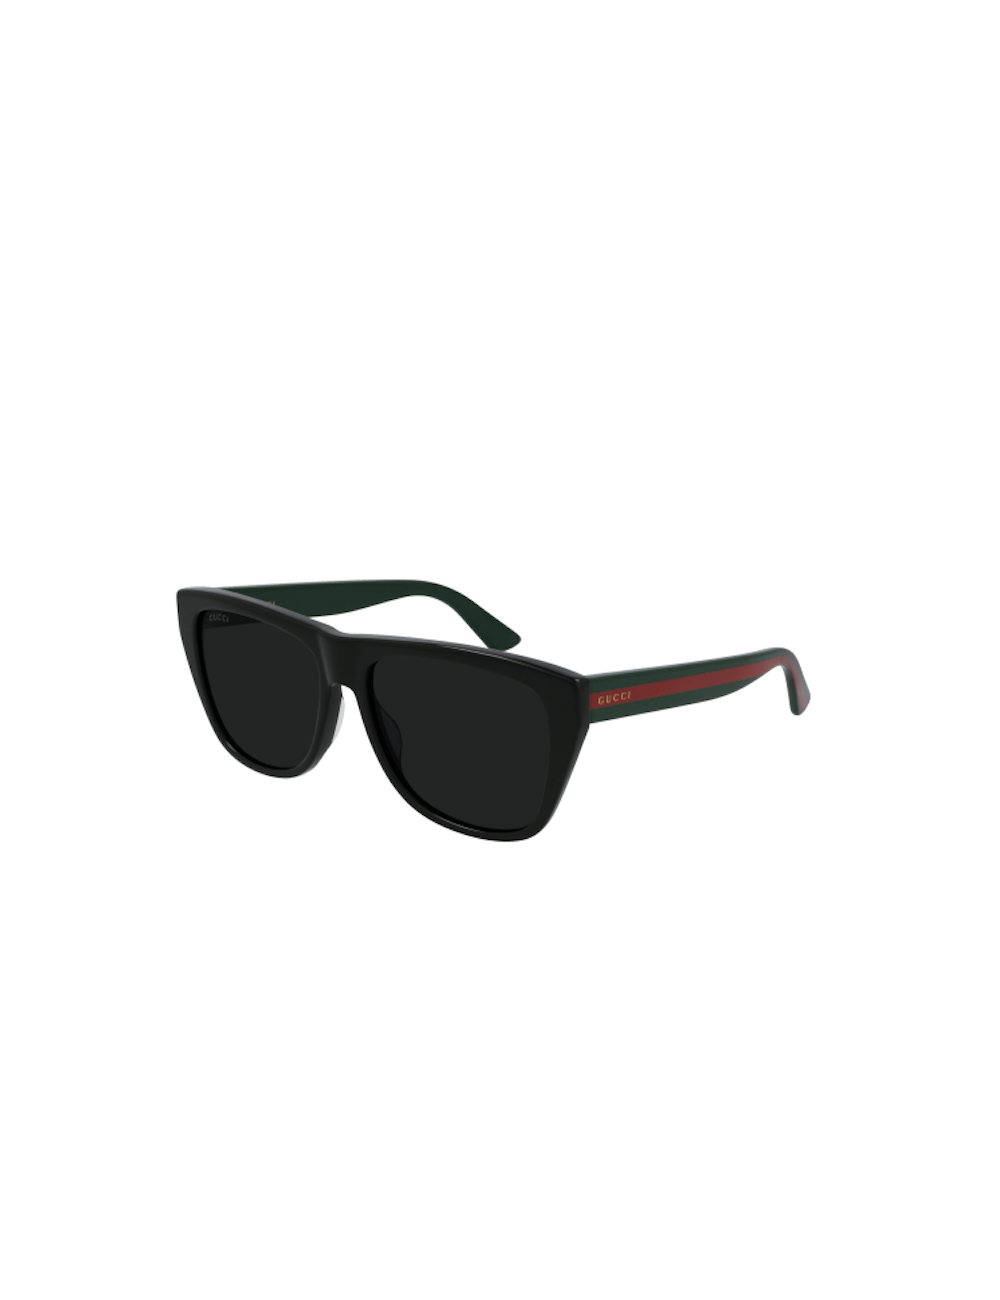 Brand New Authentic Gucci GG0743S 002 57mm Brown Square Men's Sunglasses |  eBay